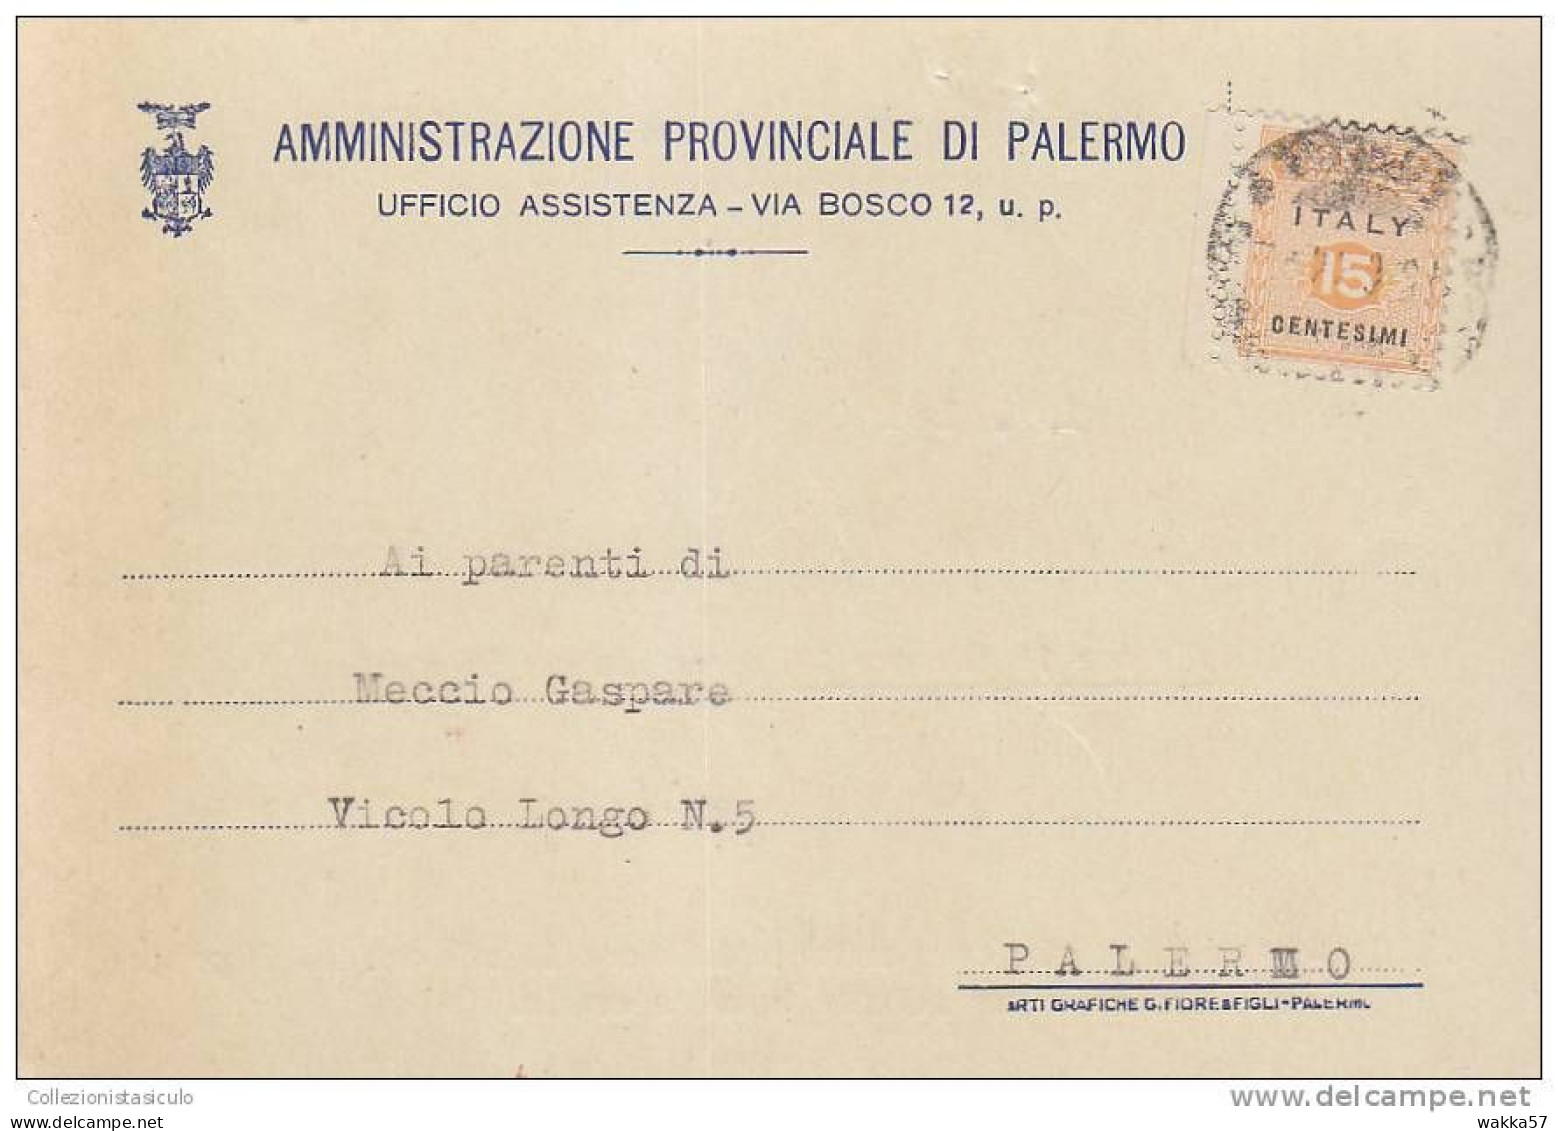 $-363- AMGOT Cent. 15 Cartolina Per Distretto Da Palermo X Città - Anglo-american Occ.: Sicily